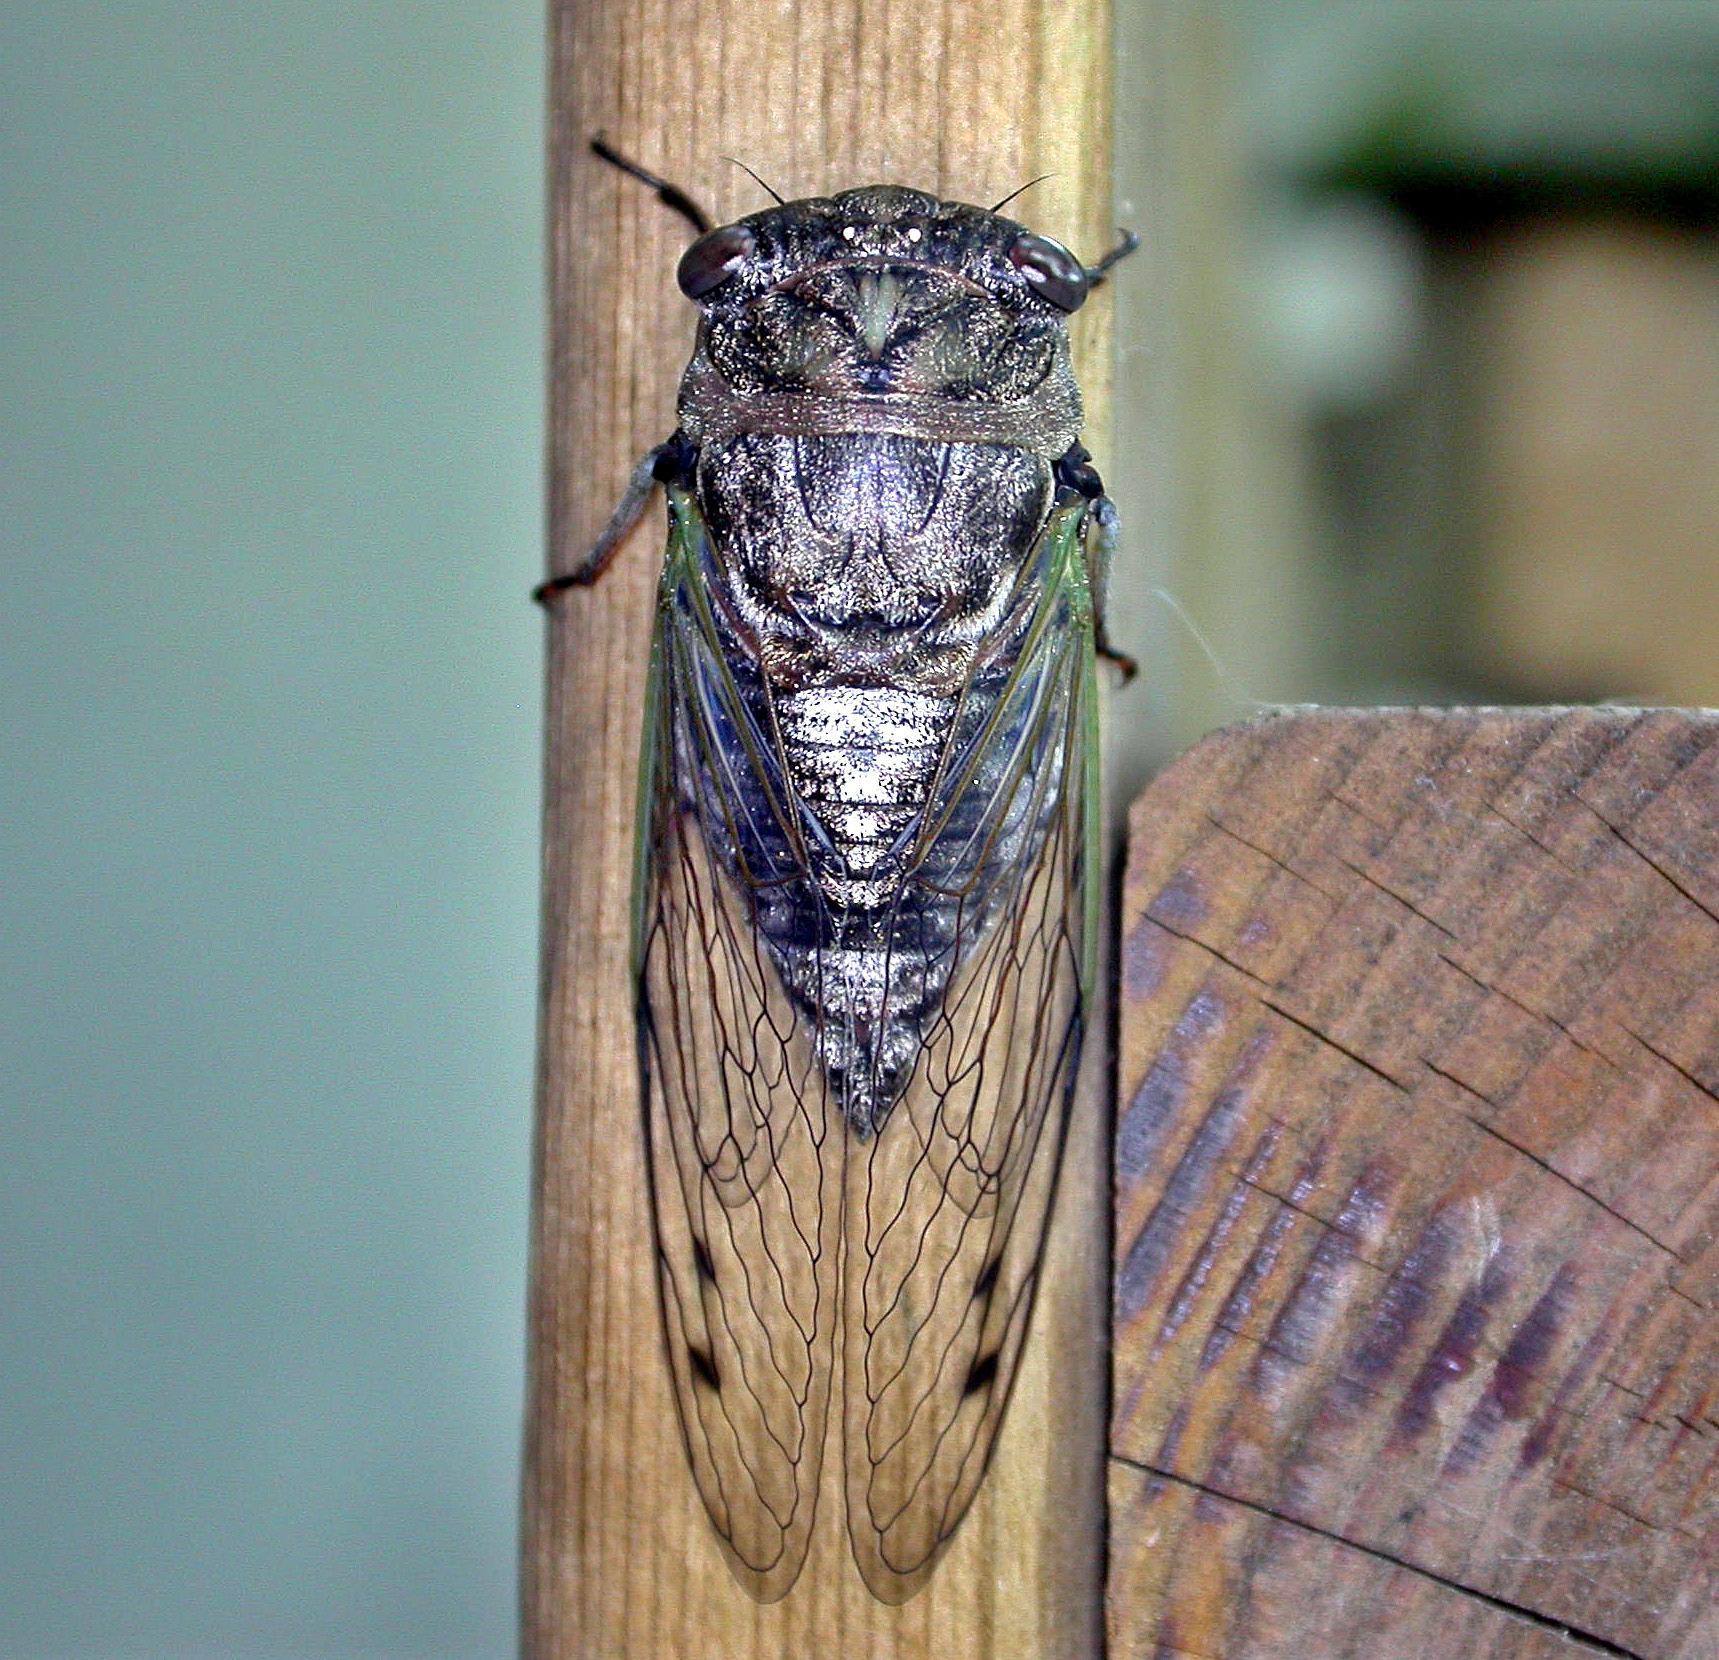 Cicada. Photo: Bob Yukich